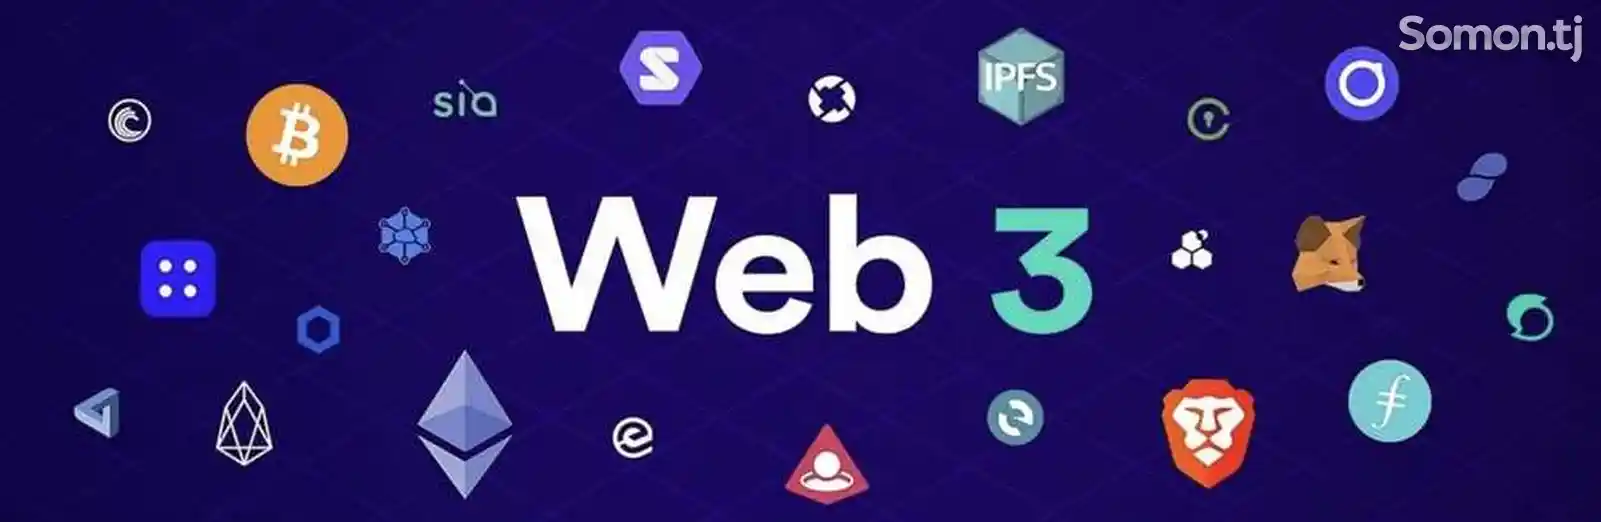 Онлайн-курс Web 3.0-1